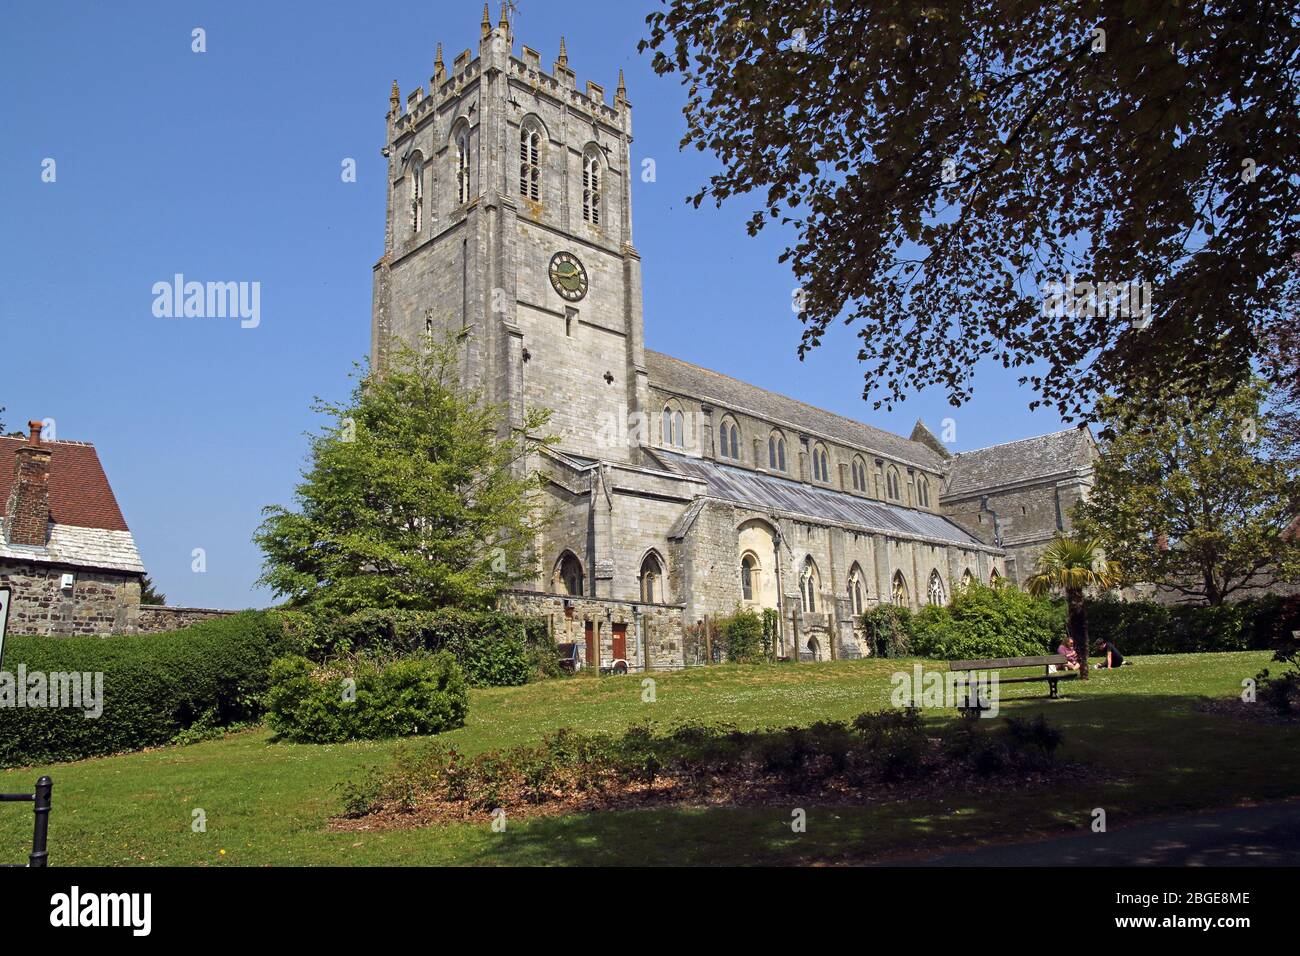 Prieuré de Christchurch, Christchurch, Dorset, Angleterre. Datant du XIIe siècle, c'est la plus longue église paroissiale d'Angleterre. Banque D'Images